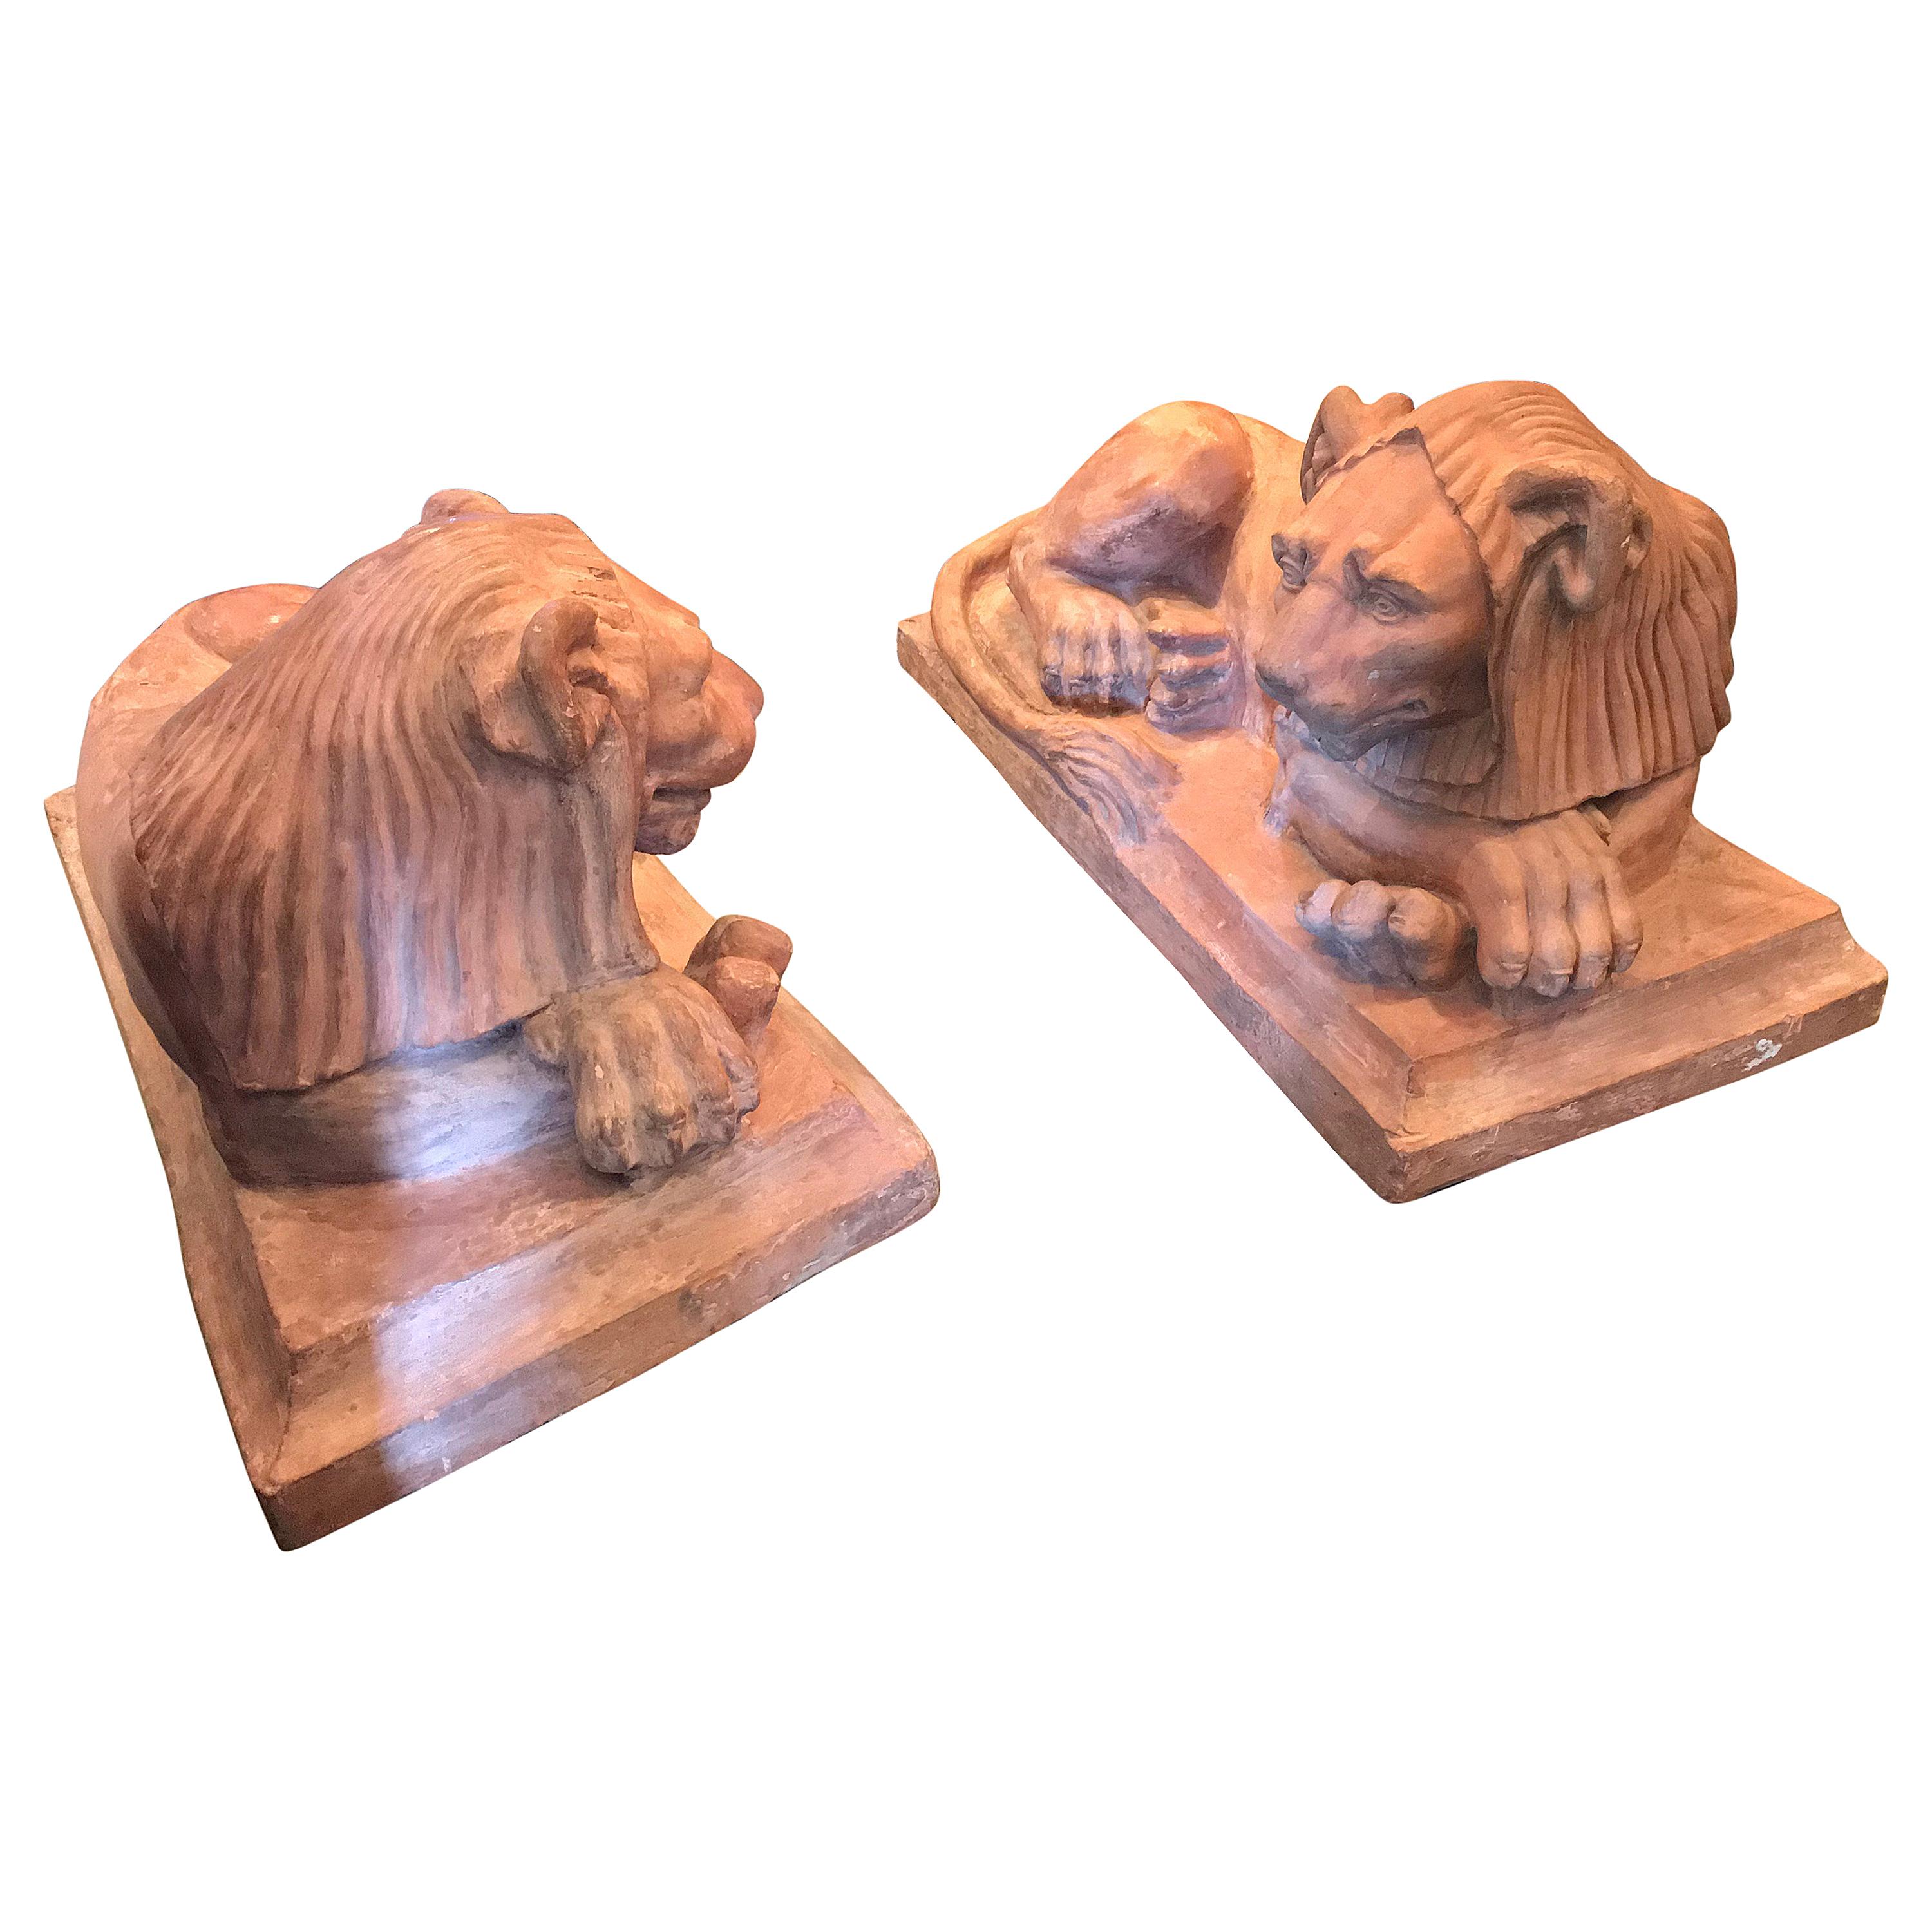 Rare Pair French Retour D'egypt Terracotta Lions Sculptures Statues Los Angeles For Sale